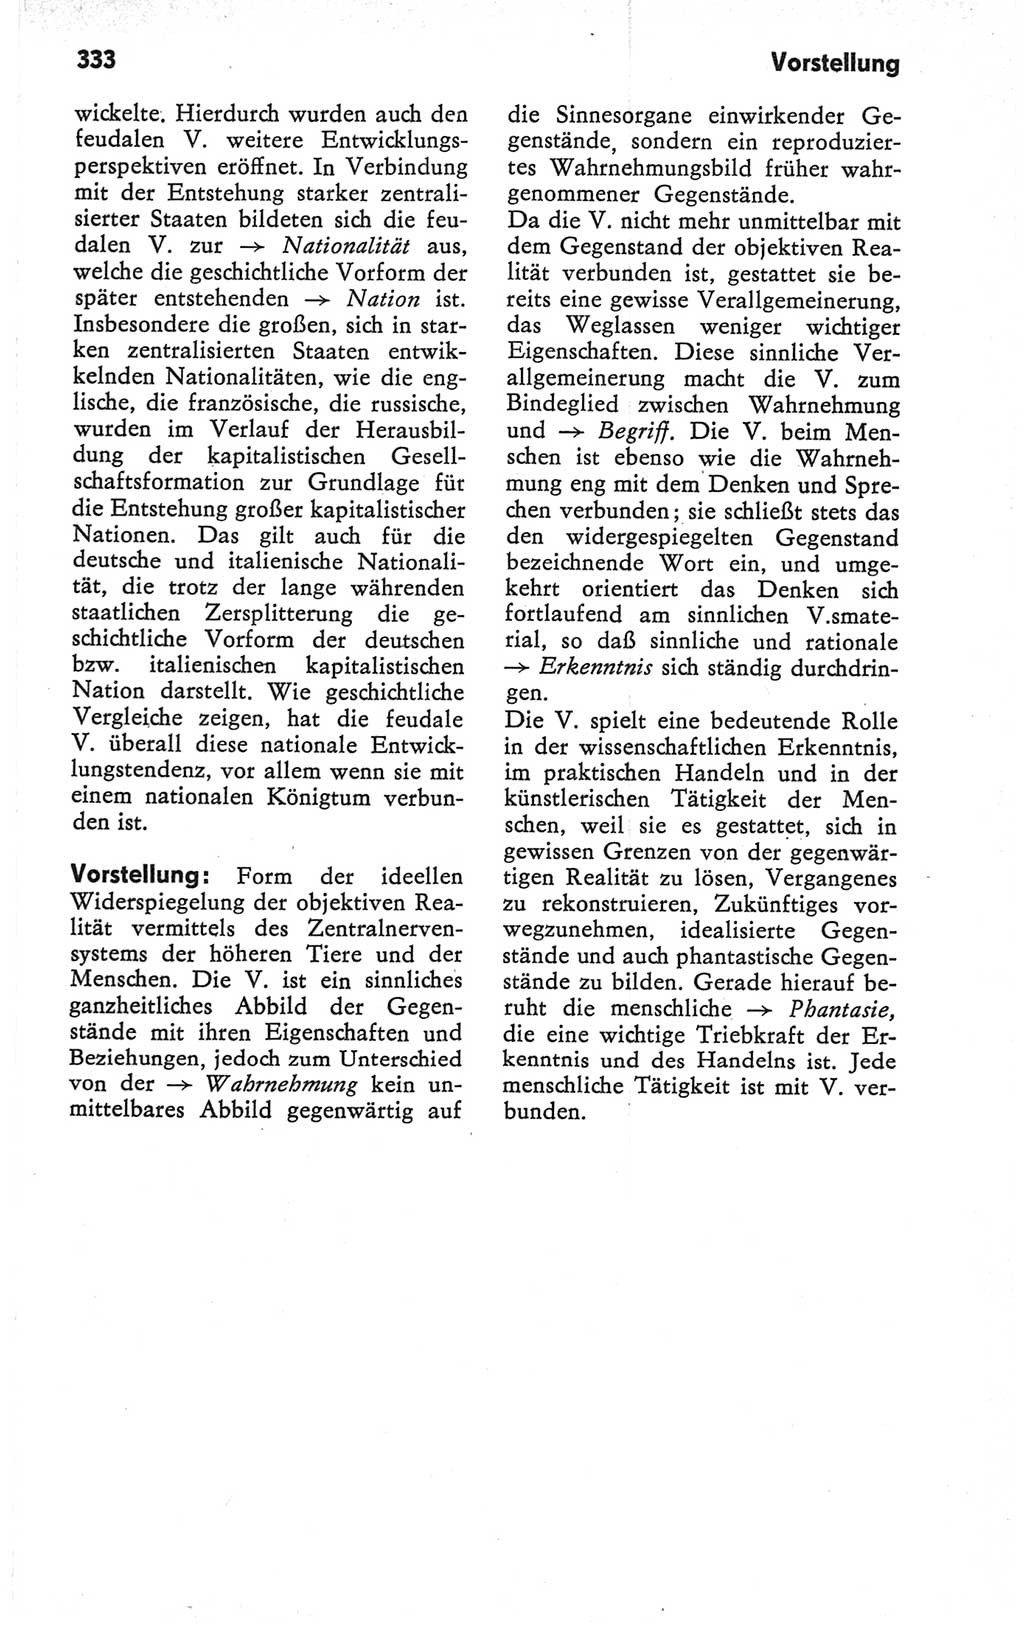 Kleines Wörterbuch der marxistisch-leninistischen Philosophie [Deutsche Demokratische Republik (DDR)] 1979, Seite 333 (Kl. Wb. ML Phil. DDR 1979, S. 333)